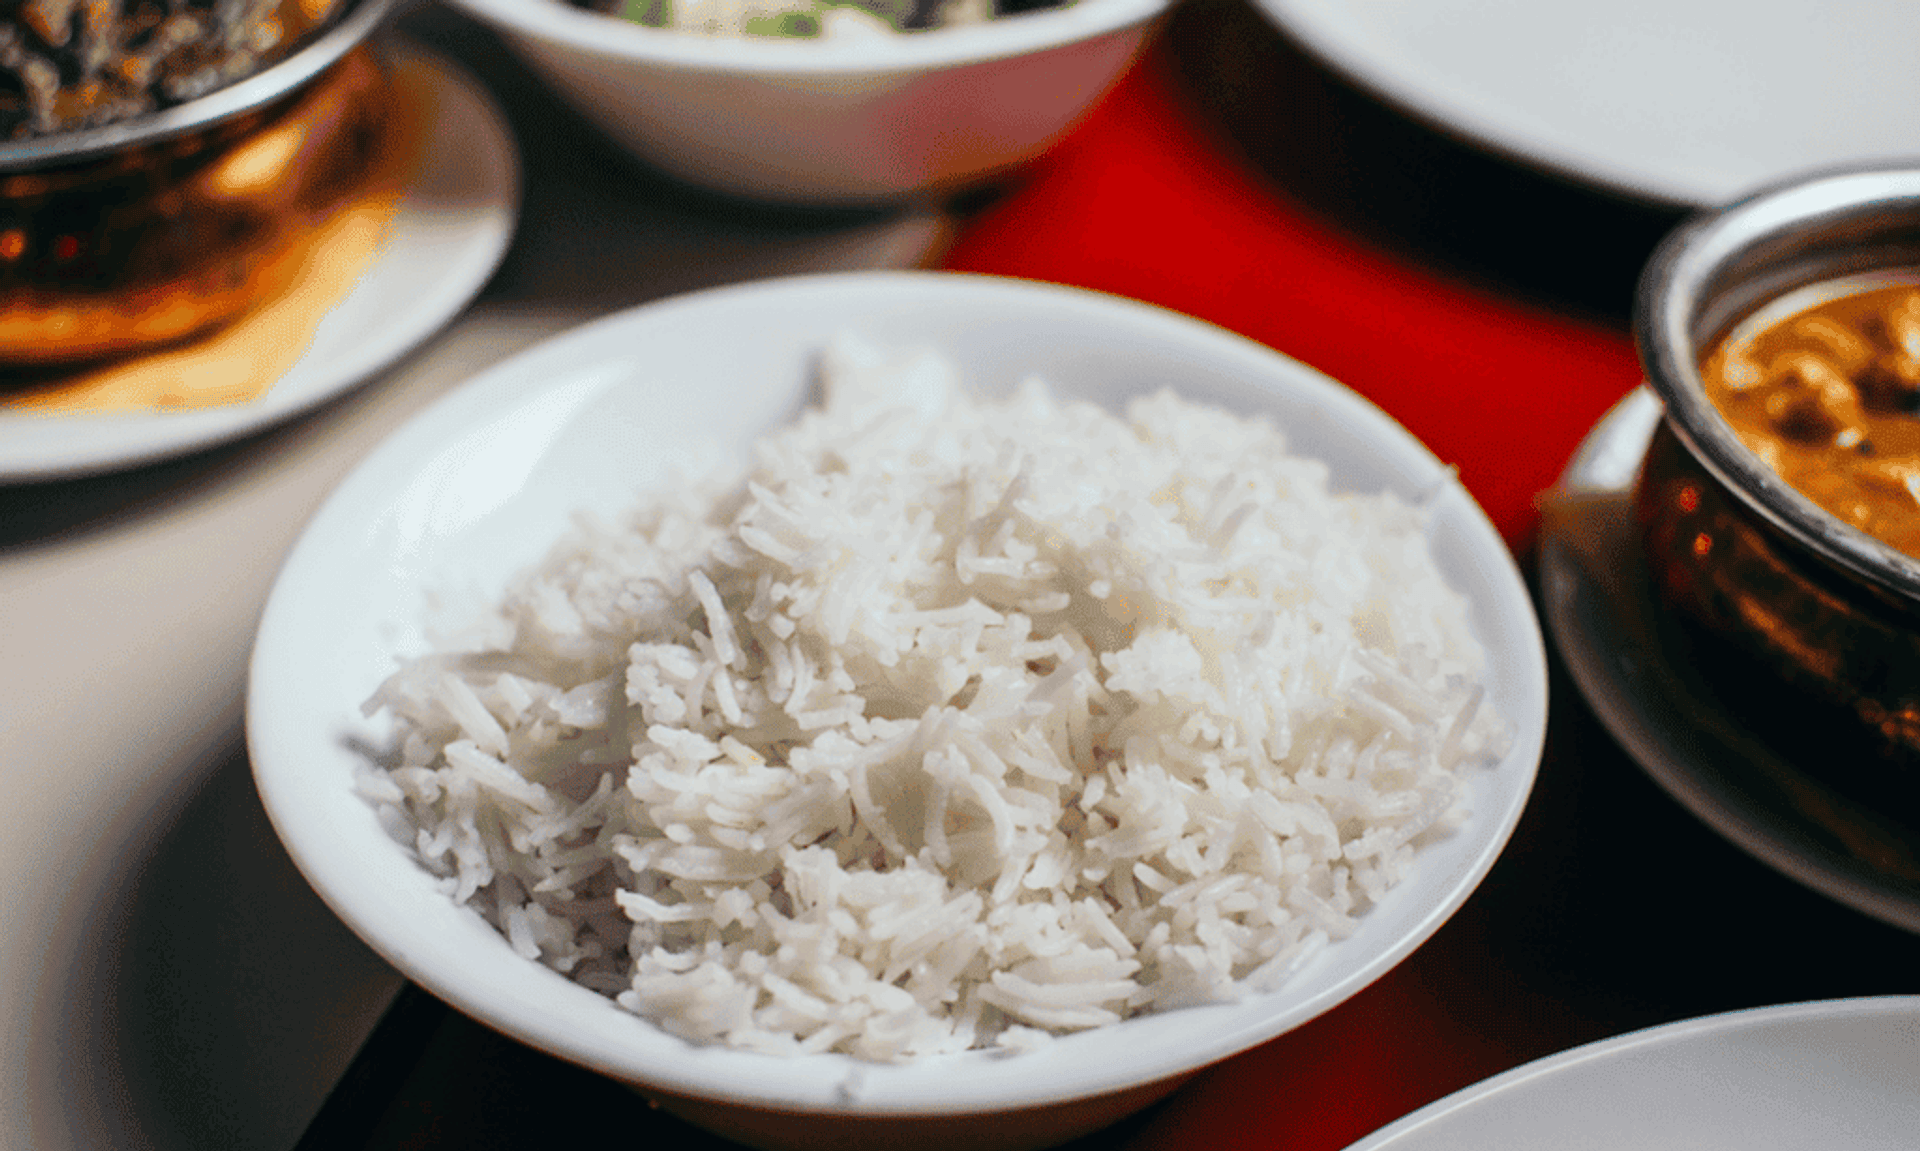 ryż może się popsuć?